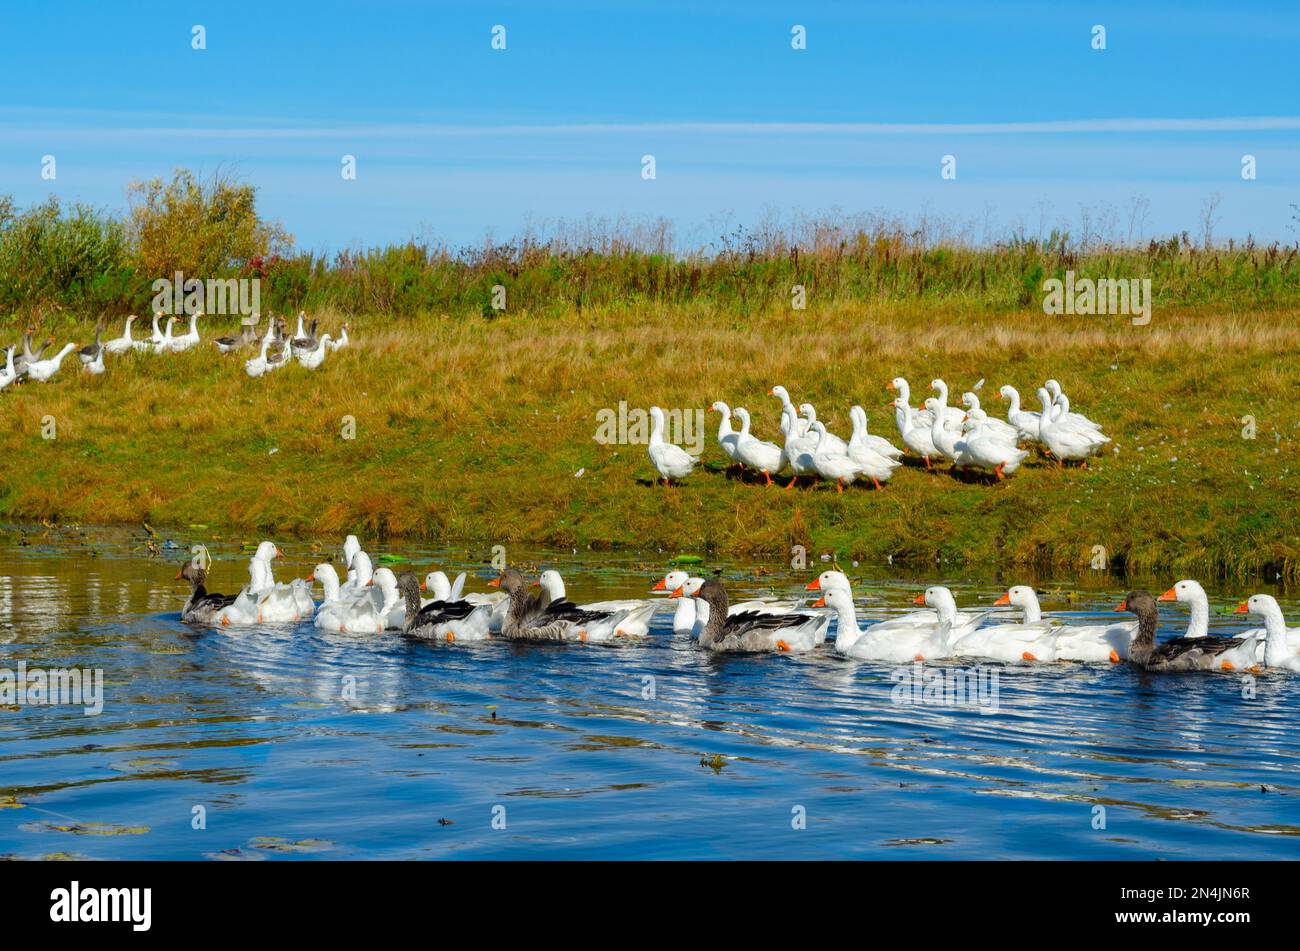 Un gregge di oche galleggianti sull'acqua del fiume sullo sfondo di altri uccelli che camminano rapidamente sulla riva verde con erba ai cespugli. Foto Stock